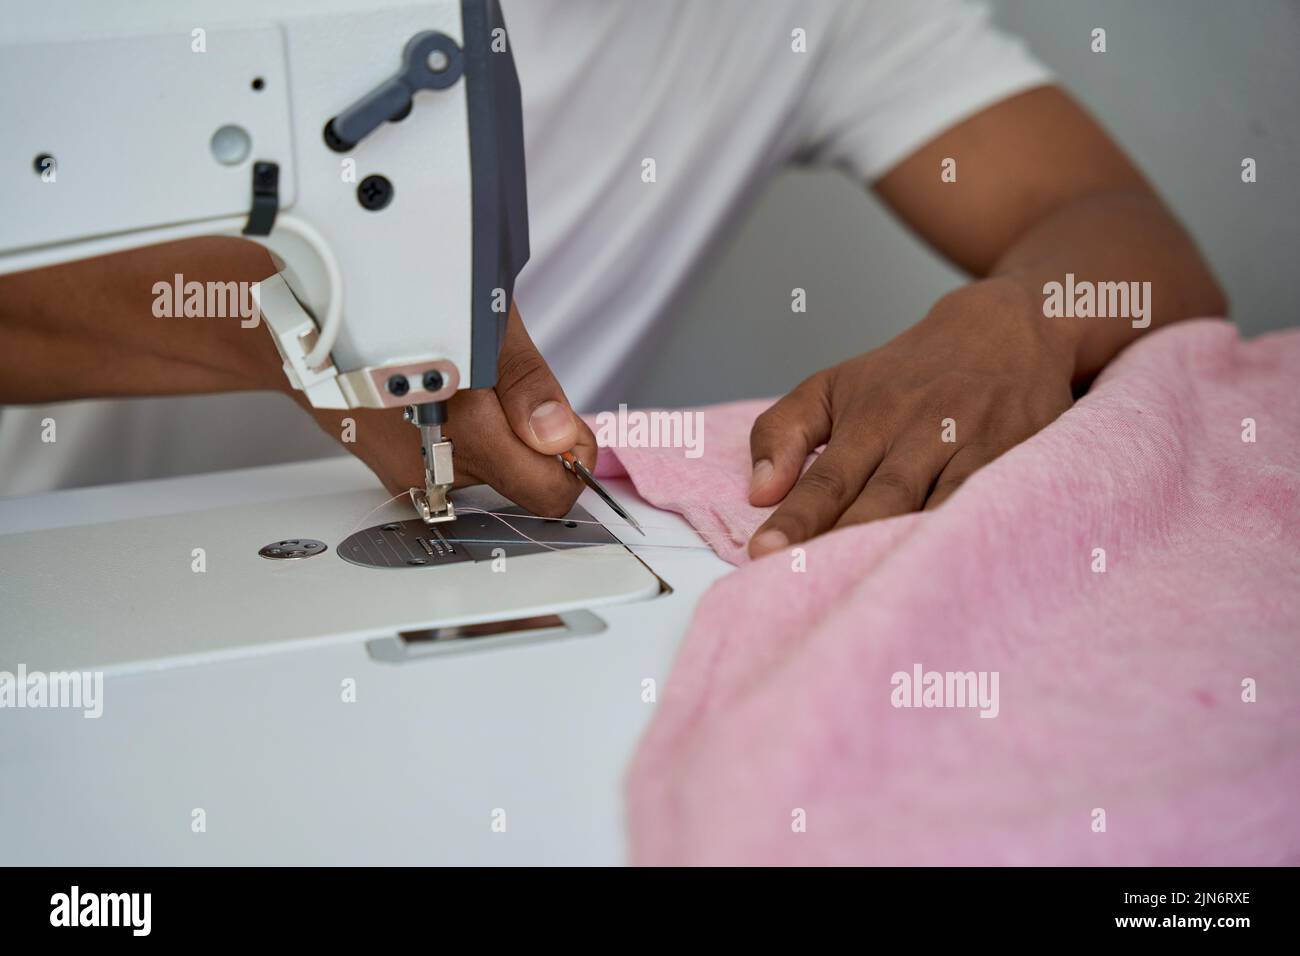 Hombre cosiendo ropa con equipo profesional en su propio taller Foto de stock